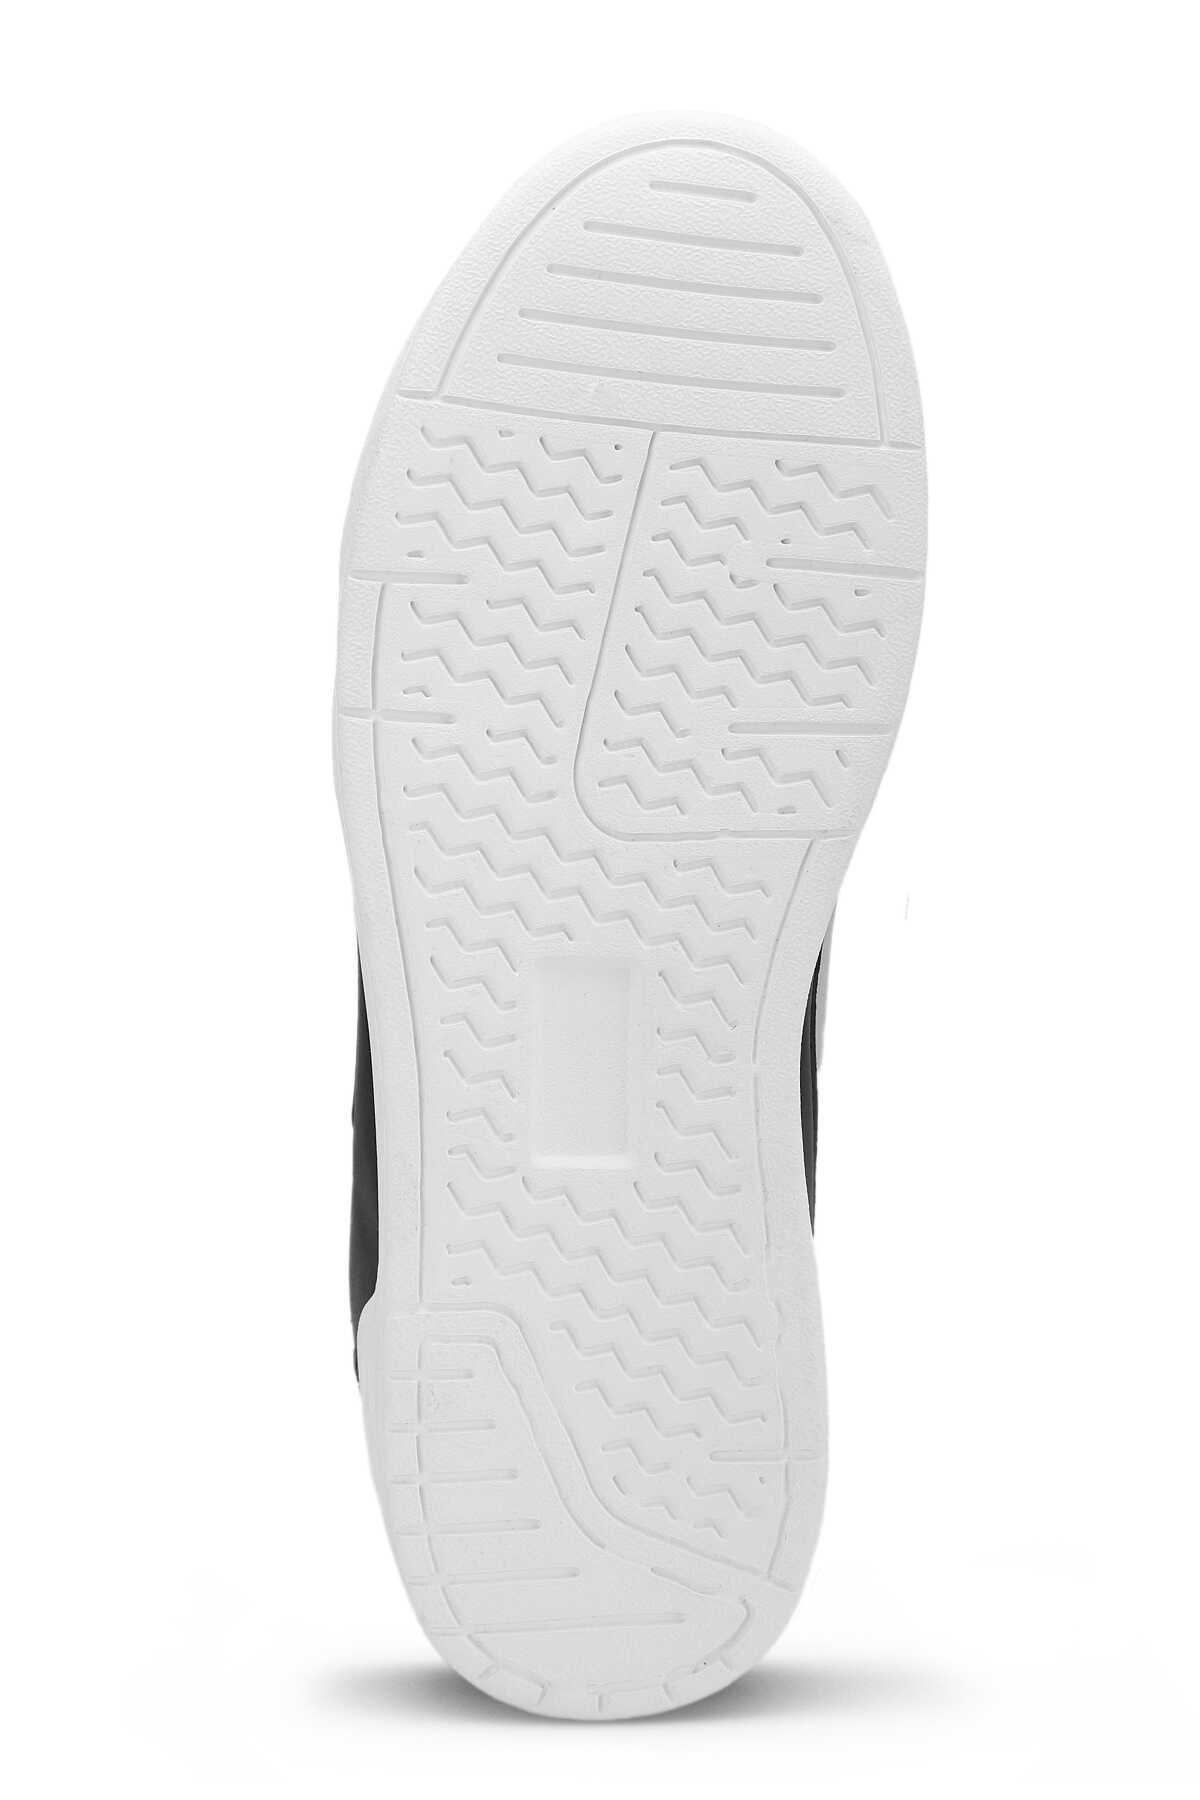 Slazenger BARBRO Sneaker Erkek Ayakkabı Siyah / Beyaz